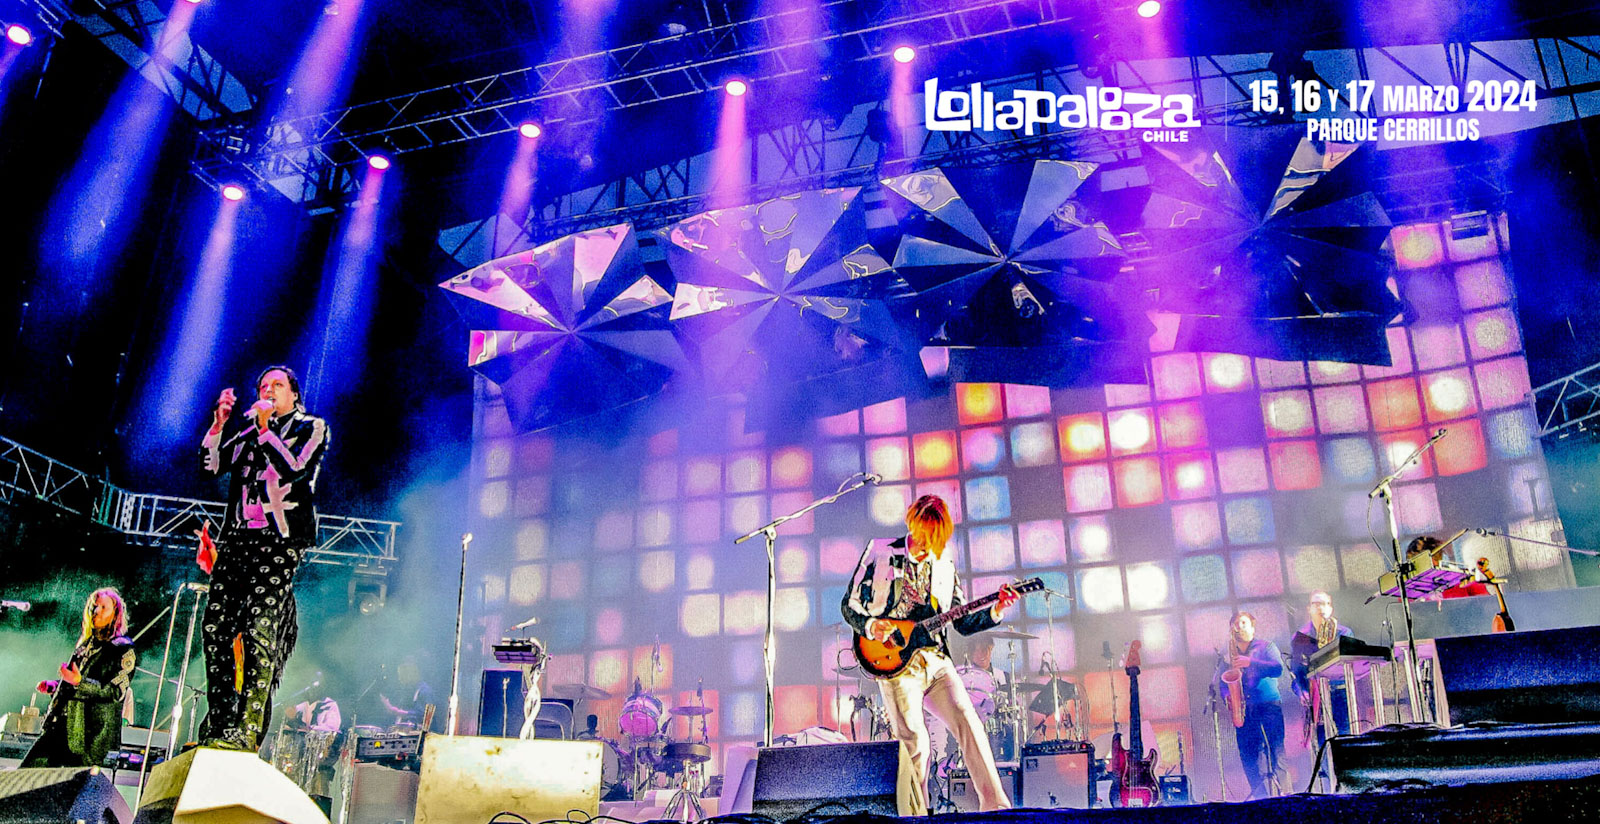 Lolla memoria: Arcade Fire y su aplaudido debut en Lollapalooza Chile 2014